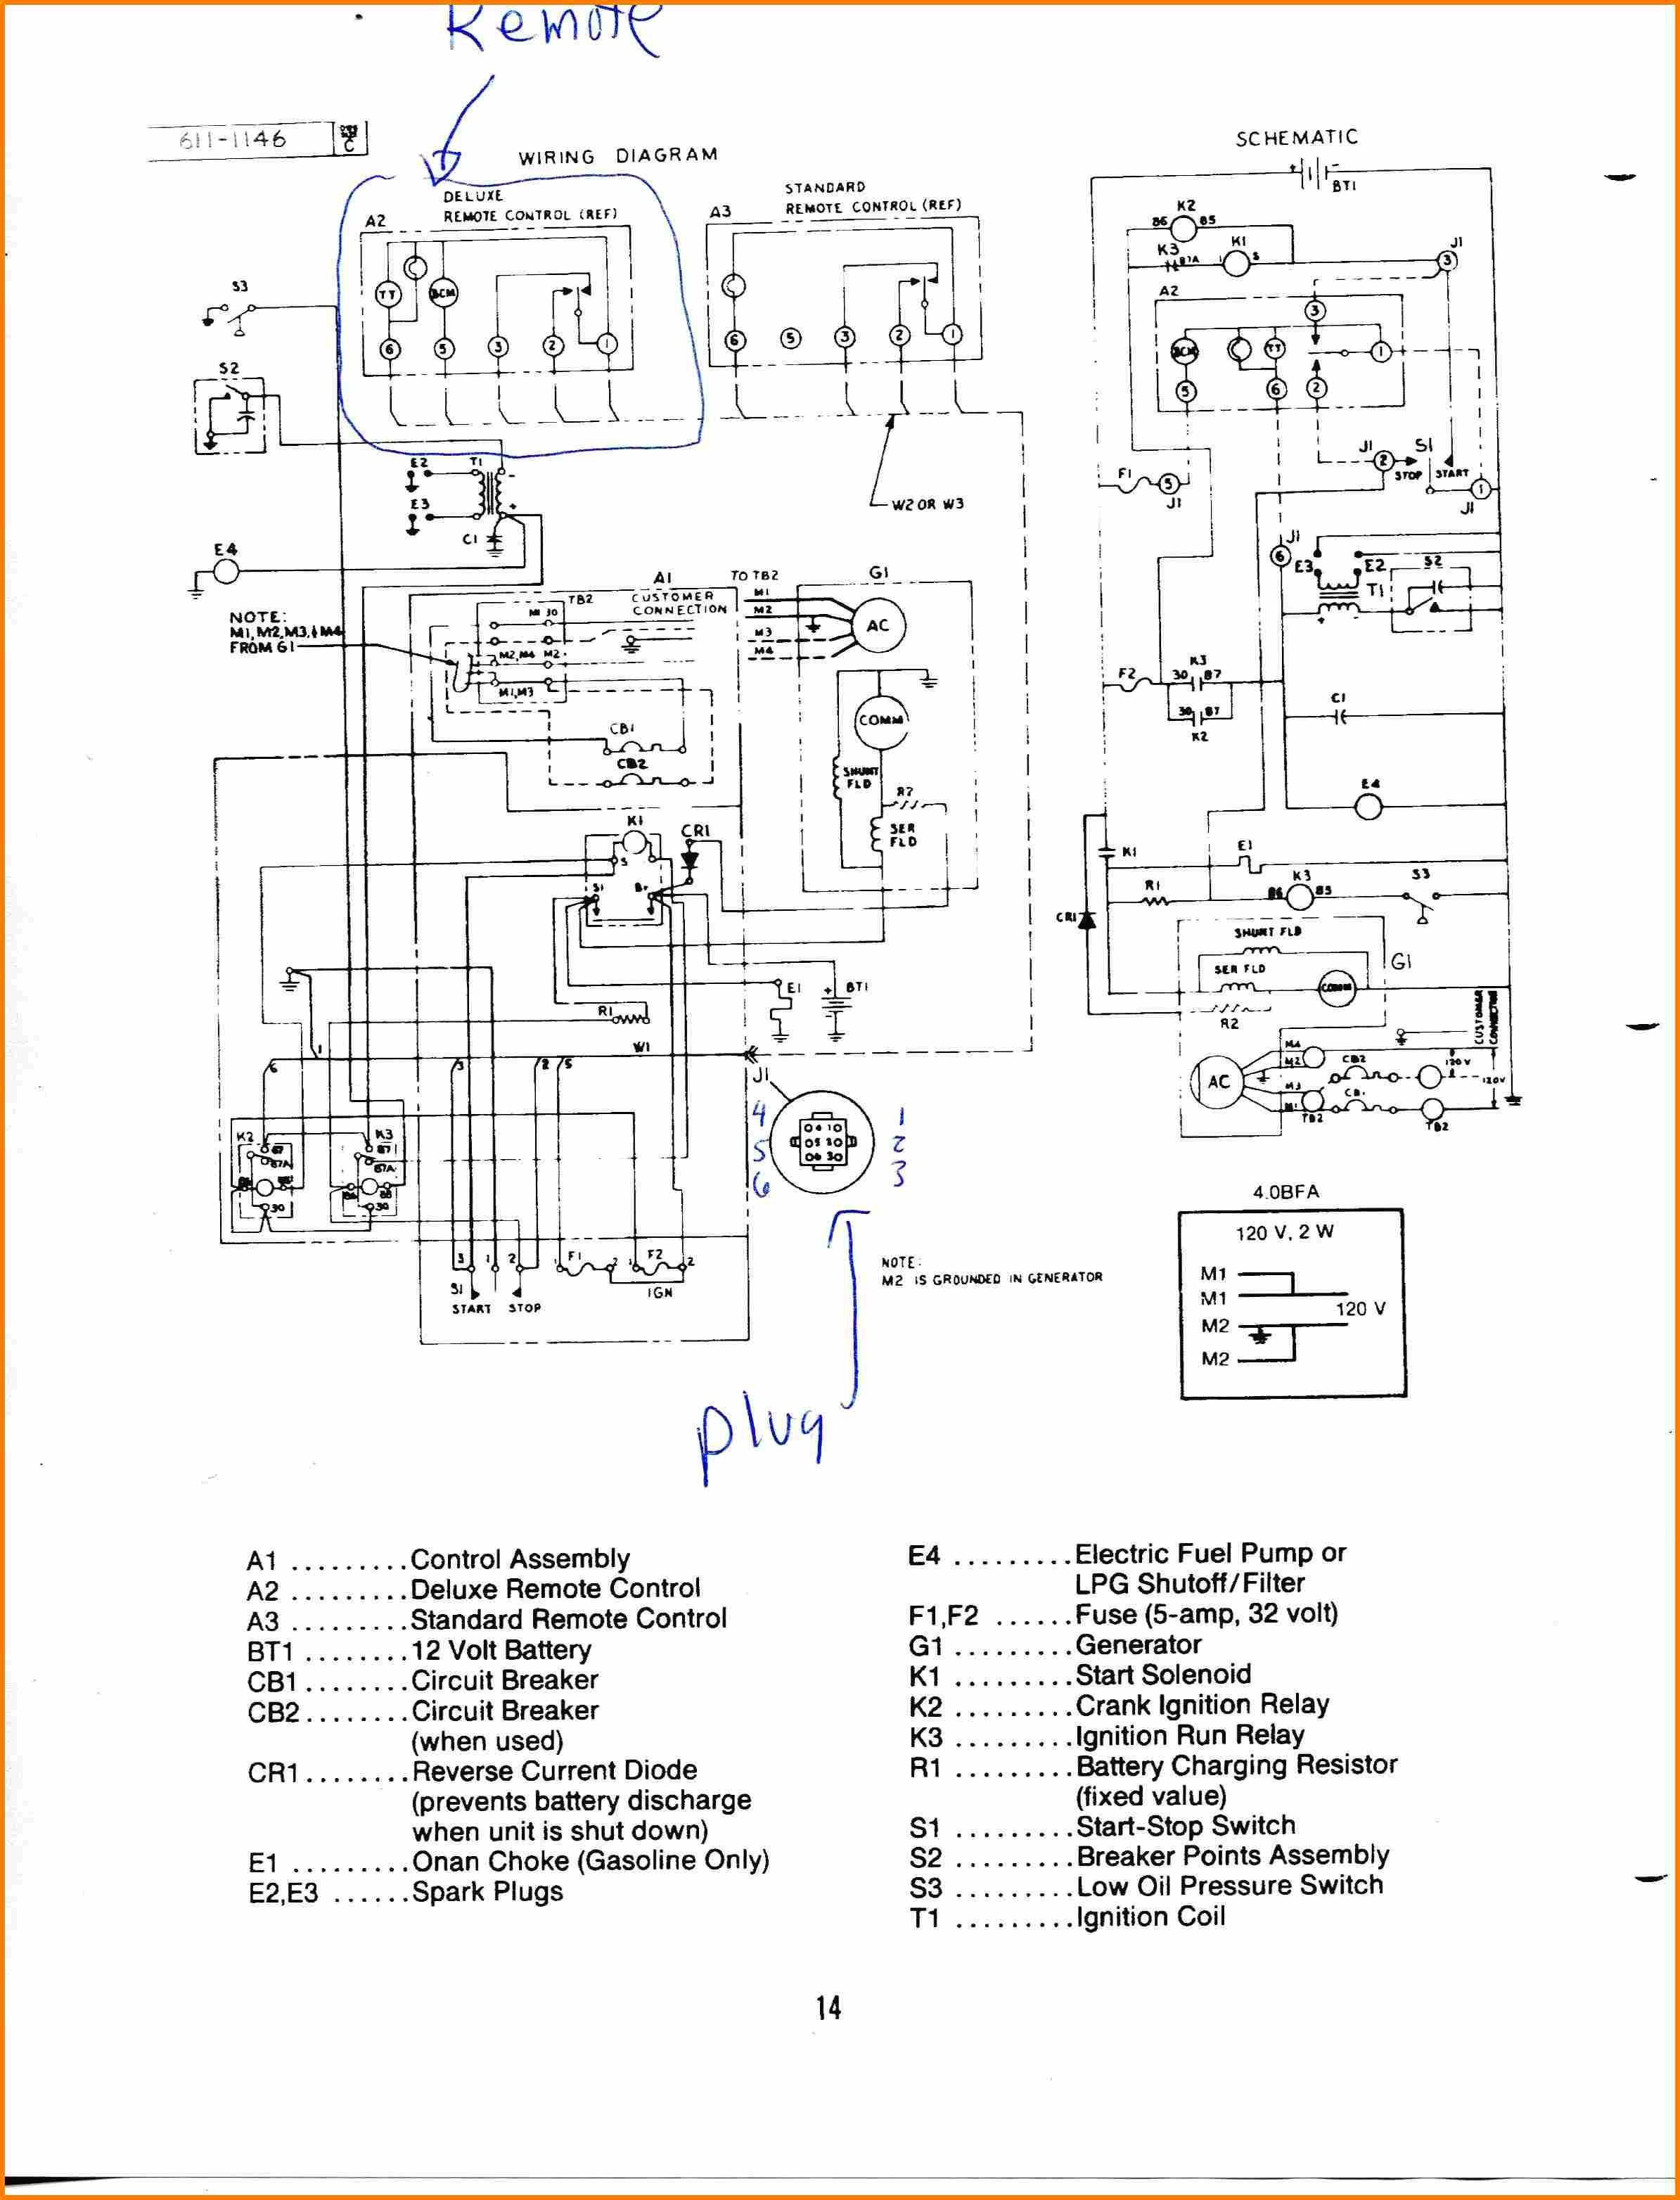 Wiring Diagram Cummins Generator Save 5 Caterpillar Emcp 2 Wiring Diagram Cable An Rv Generator Image